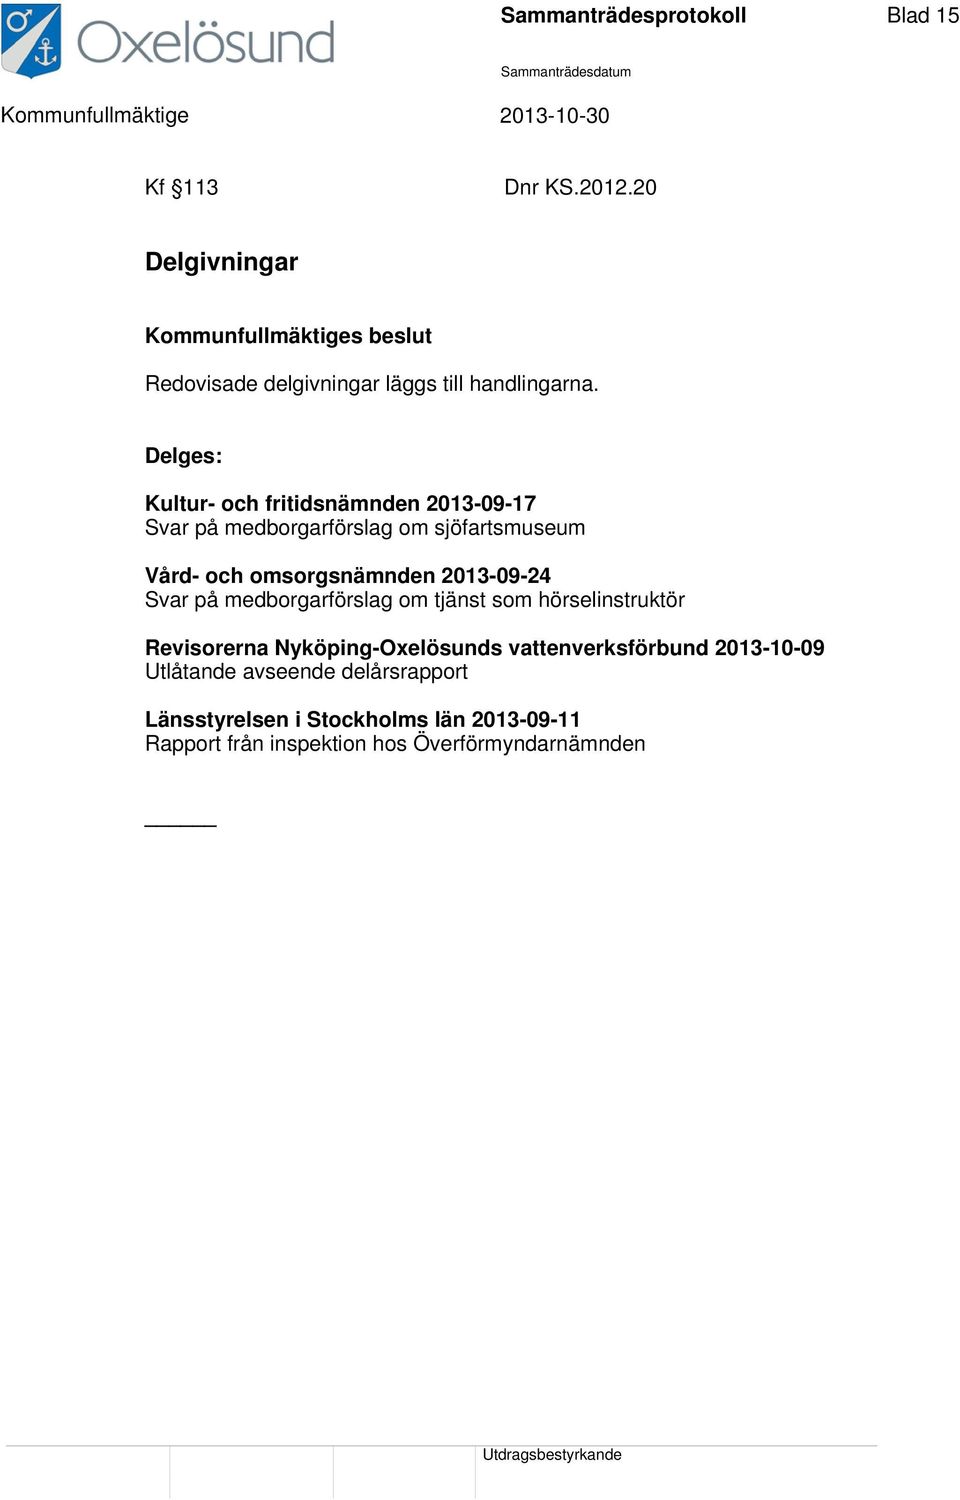 2013-09-24 Svar på medborgarförslag om tjänst som hörselinstruktör Revisorerna Nyköping-Oxelösunds vattenverksförbund